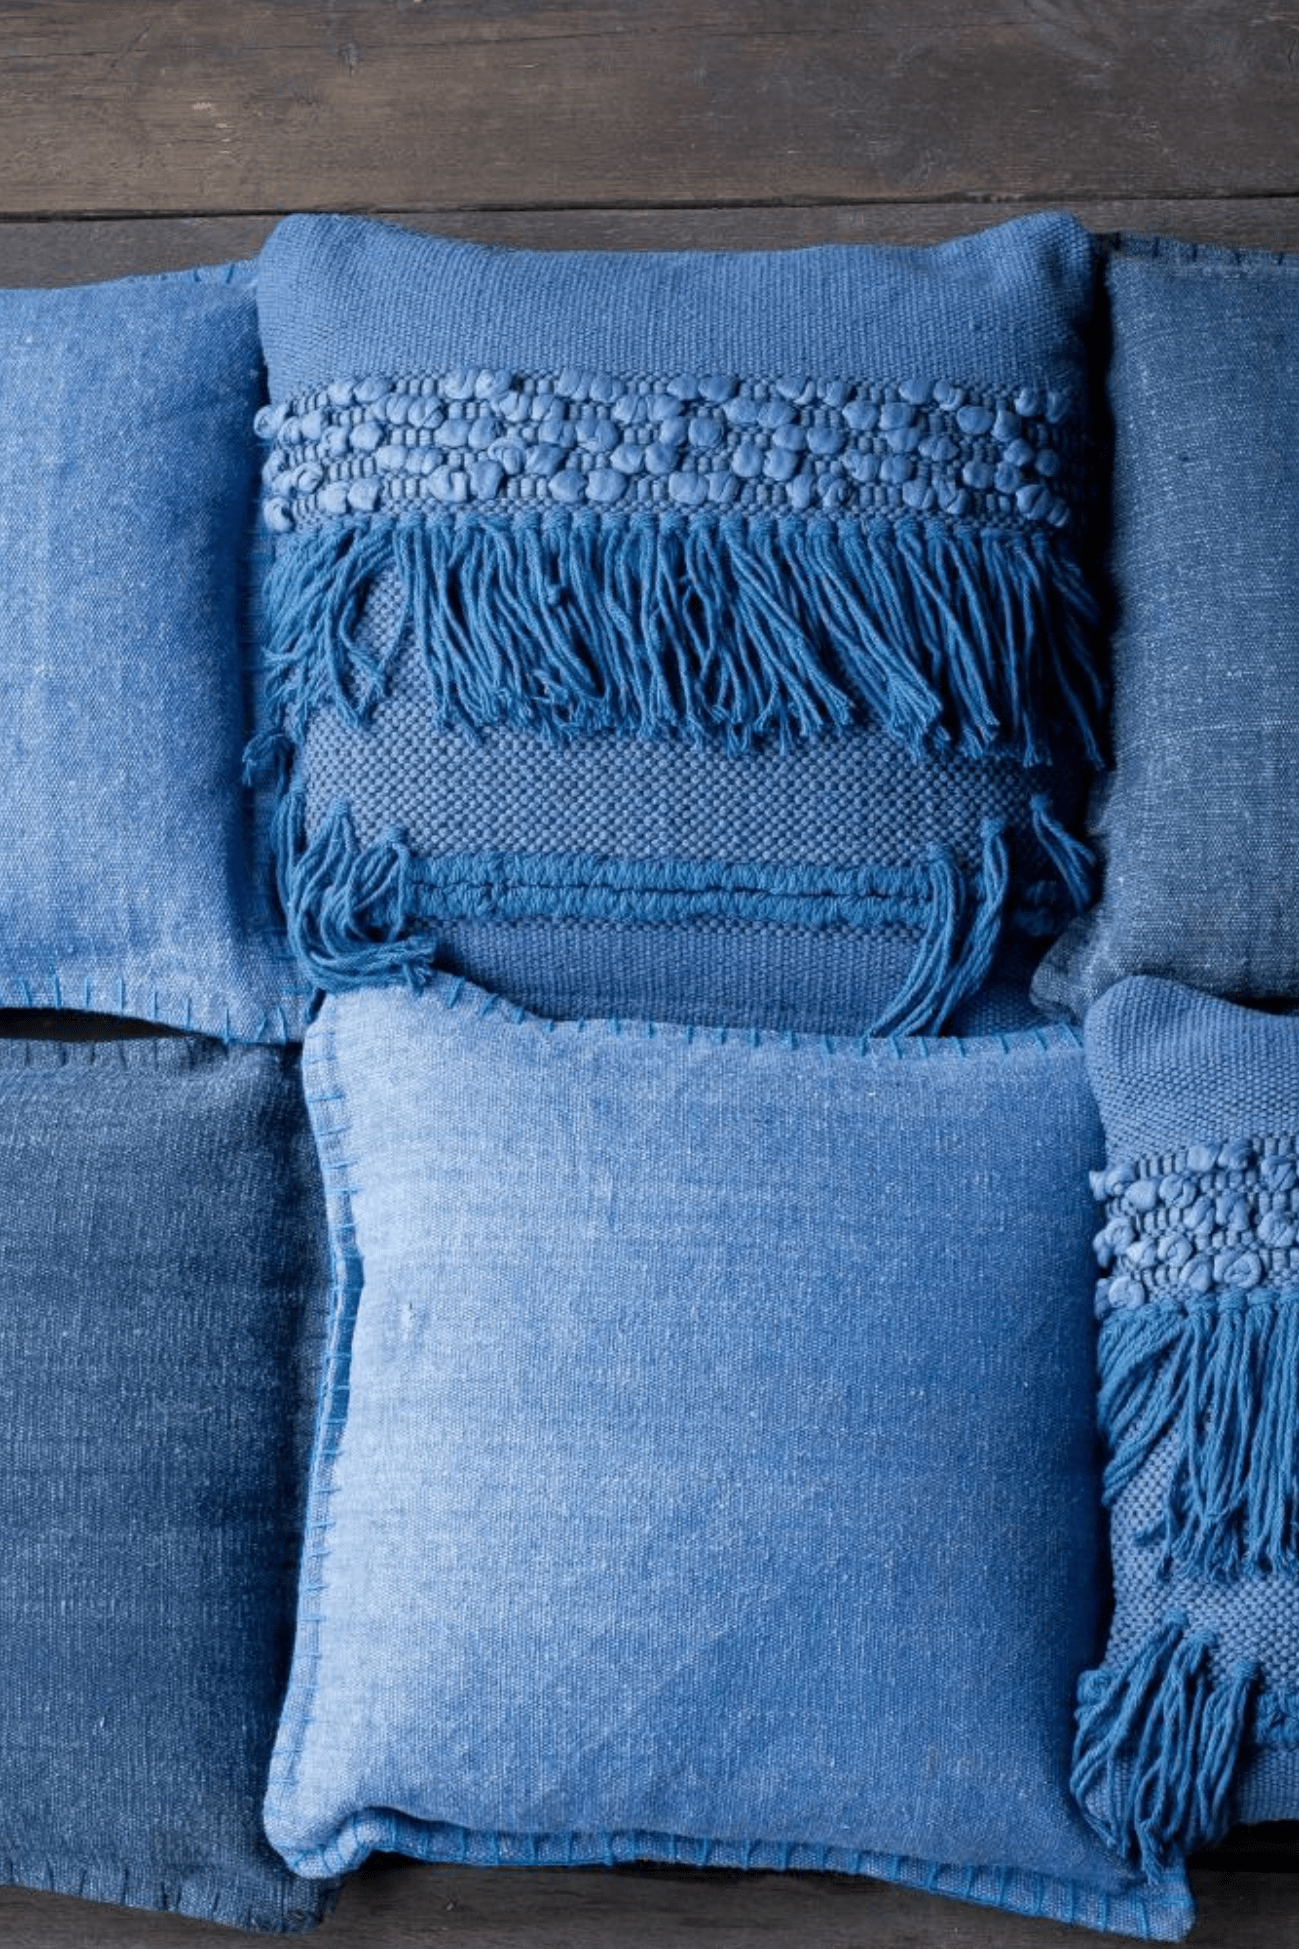 Luxe Lodge Rebi Cuscino arredo blu imbottito in cotone con frange in stile boho